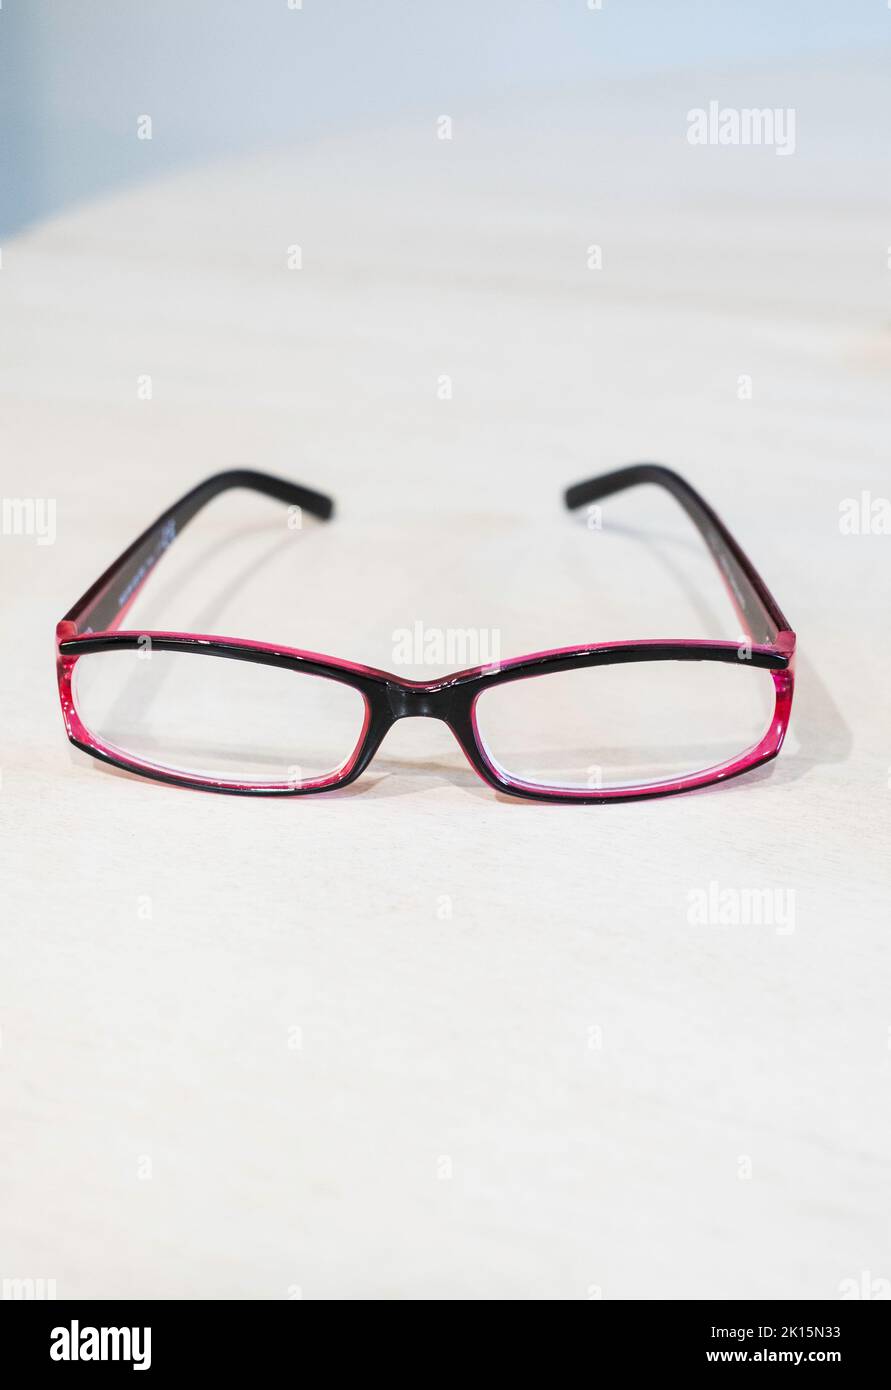 Par de gafas de lectura de visión única de mujeres de color púrpura, o sobre un fondo blanco. Foto de stock